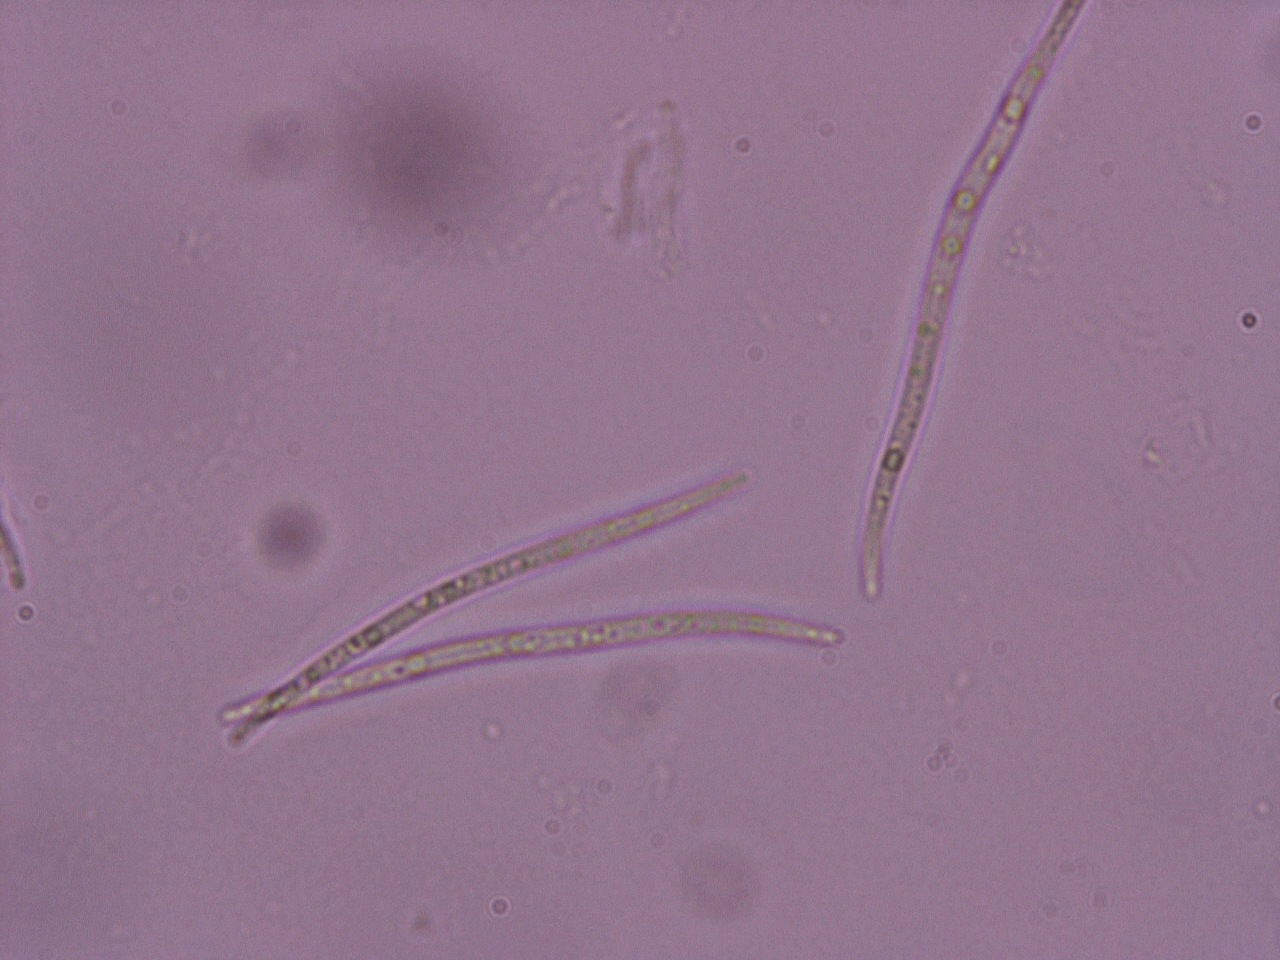 Pærelavordenen: Rhaphidicyrtis trichosporella.